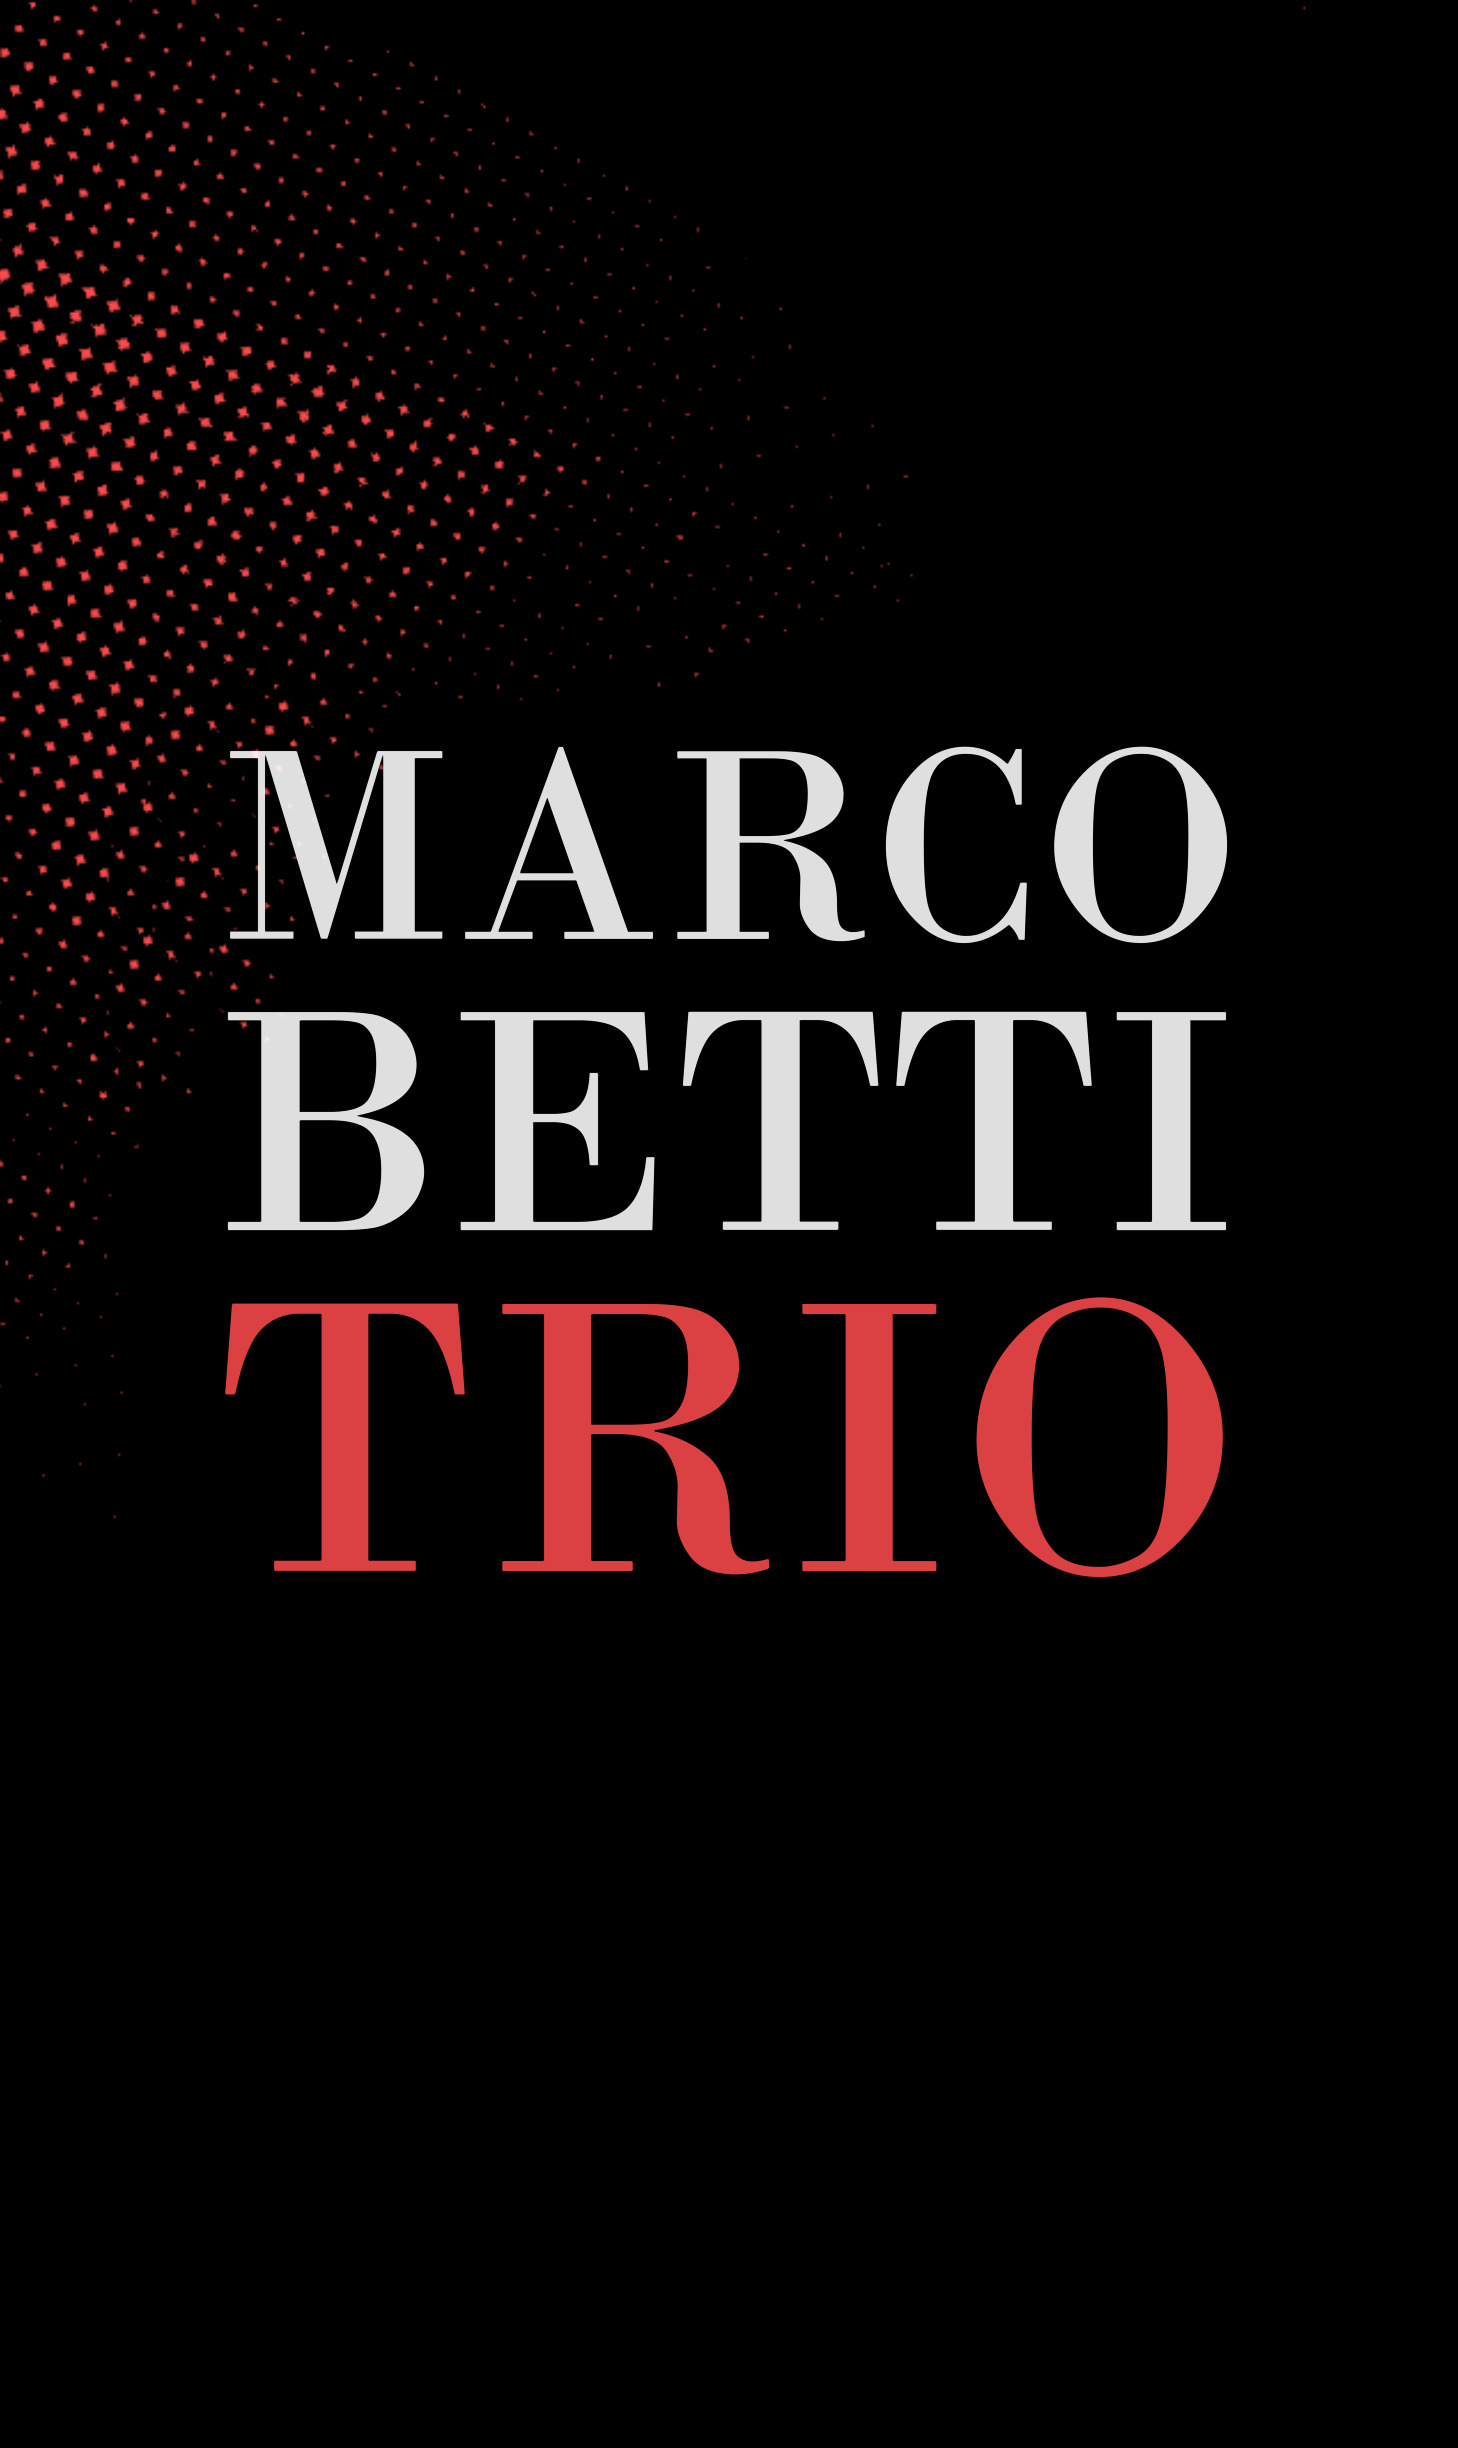 Marco Betti Trio